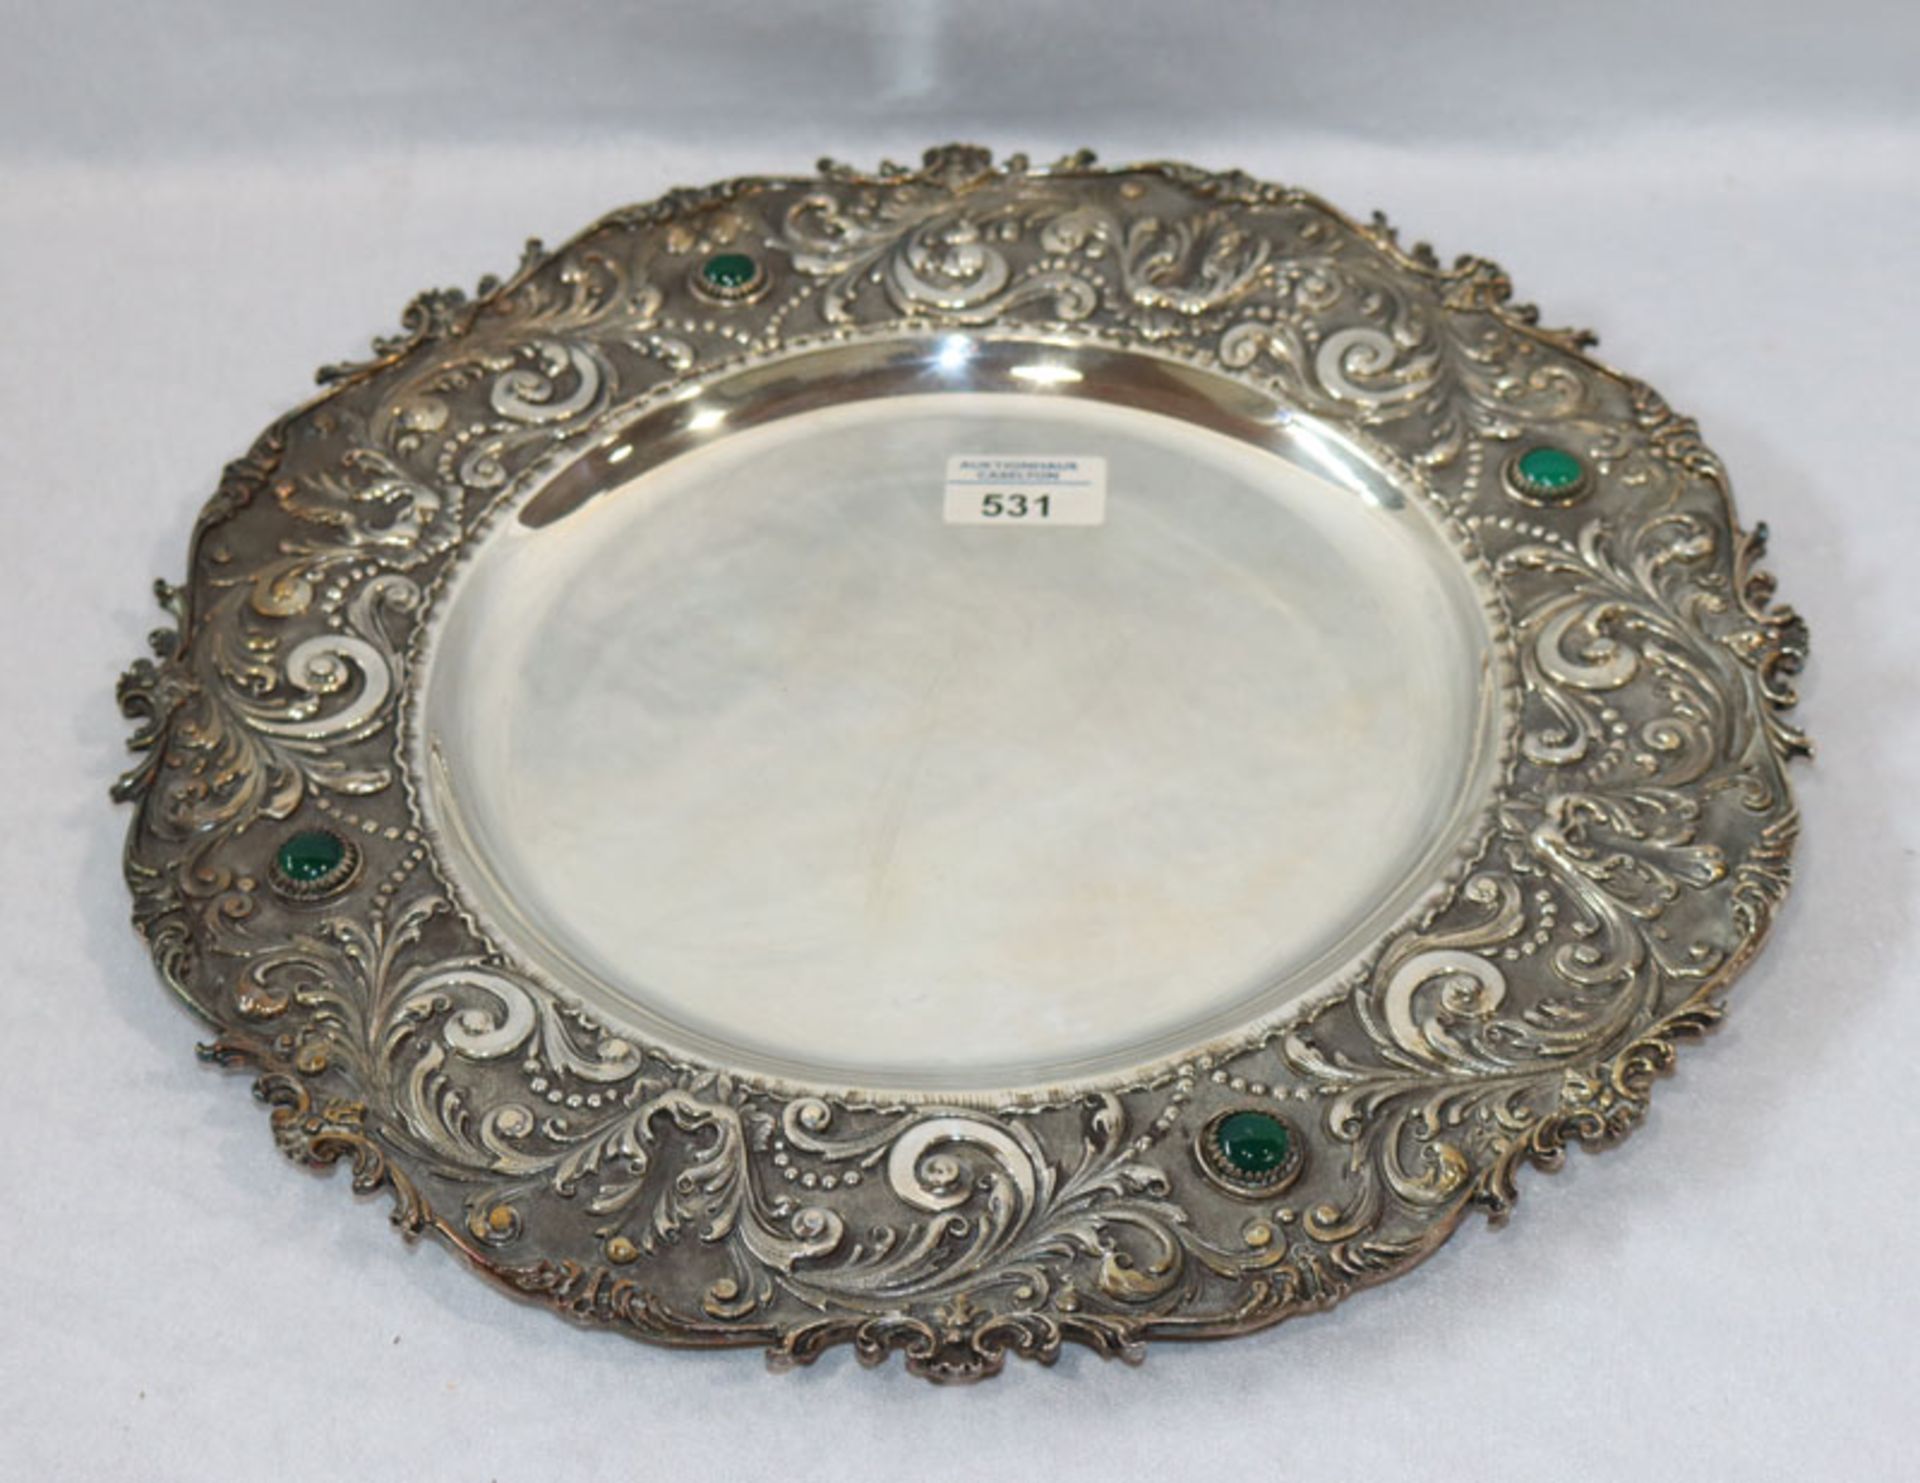 Teller, 800 Silber, 1060 gr., mit Reliefrand und grünen Farbsteinen, D 38 cm, Gebrauchsspuren